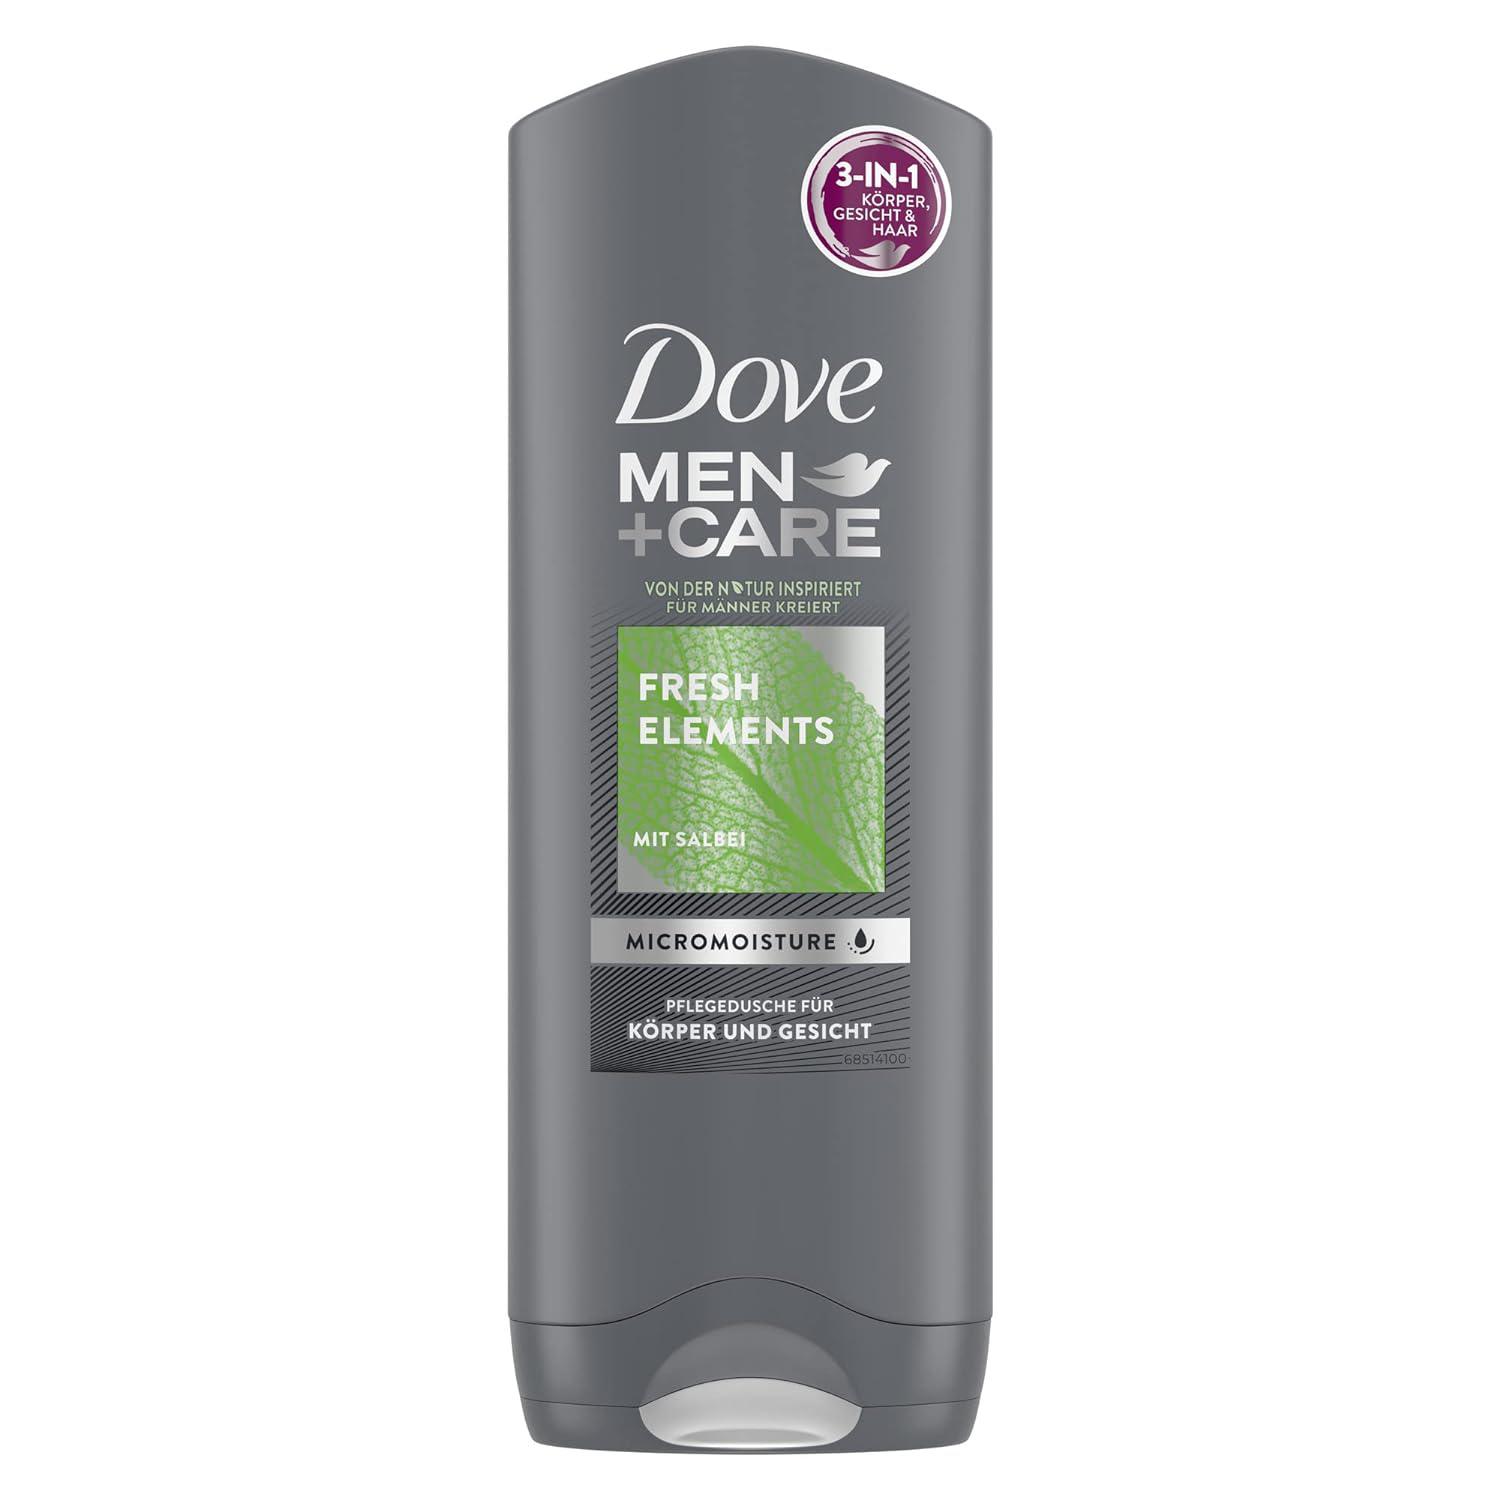 Dove Men+Care 3-in-1 Fresh Elements sprchový gel 250 ml - originál z Německa